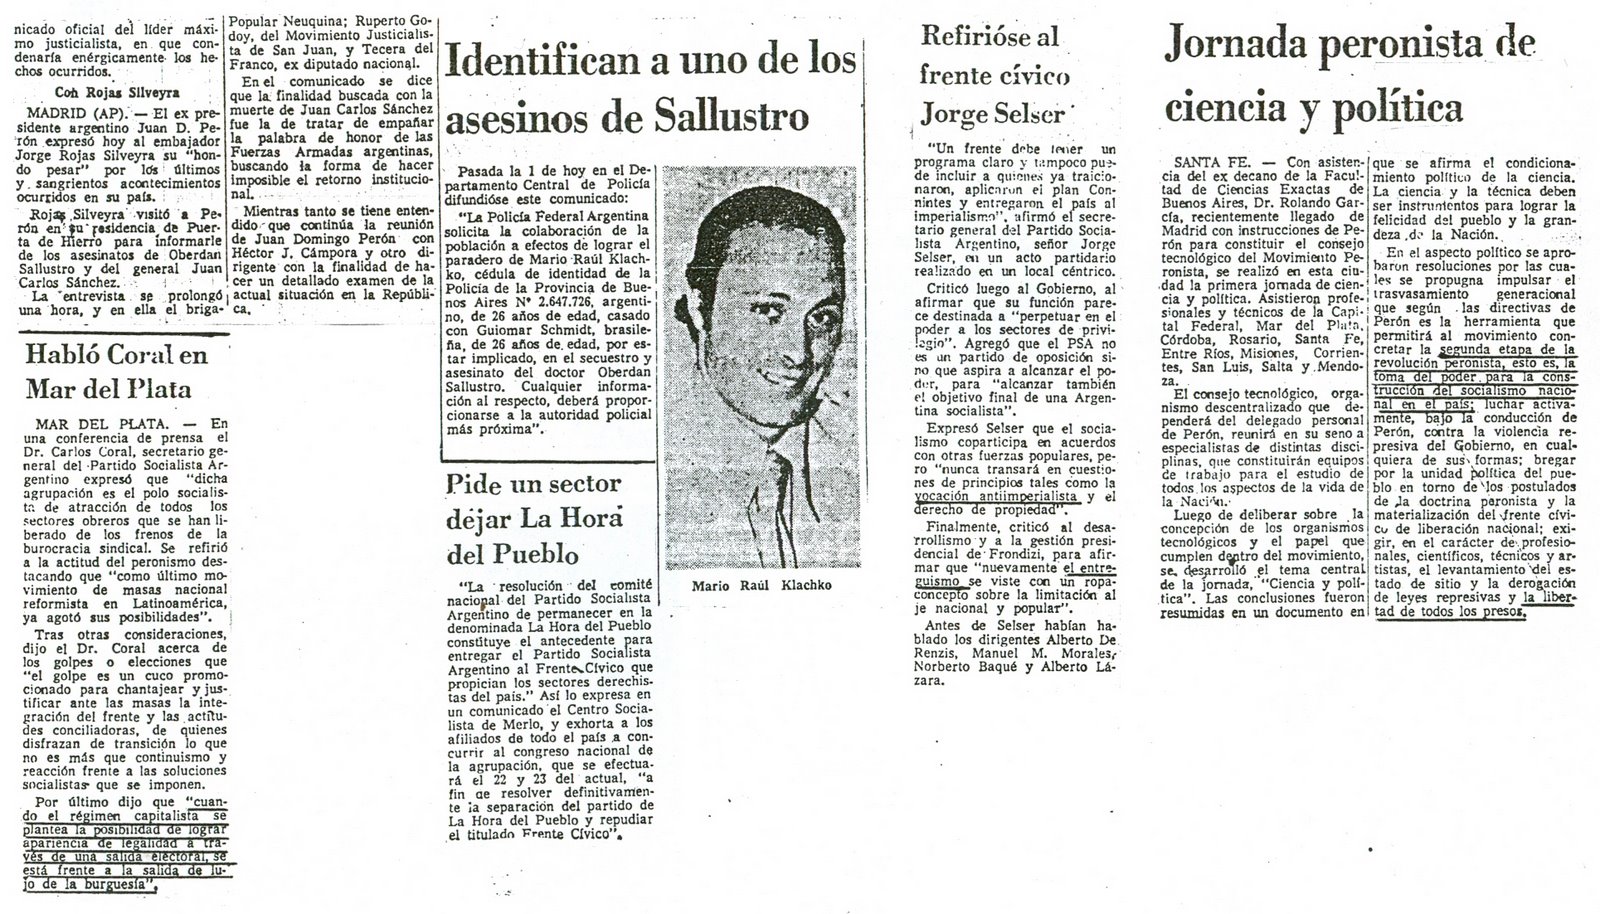 [1972-11-04+La+Nacion+-+Asesinatos+de+gral+Sanchez+y+Dr+Oberdan+Sallustro+11.jpg]